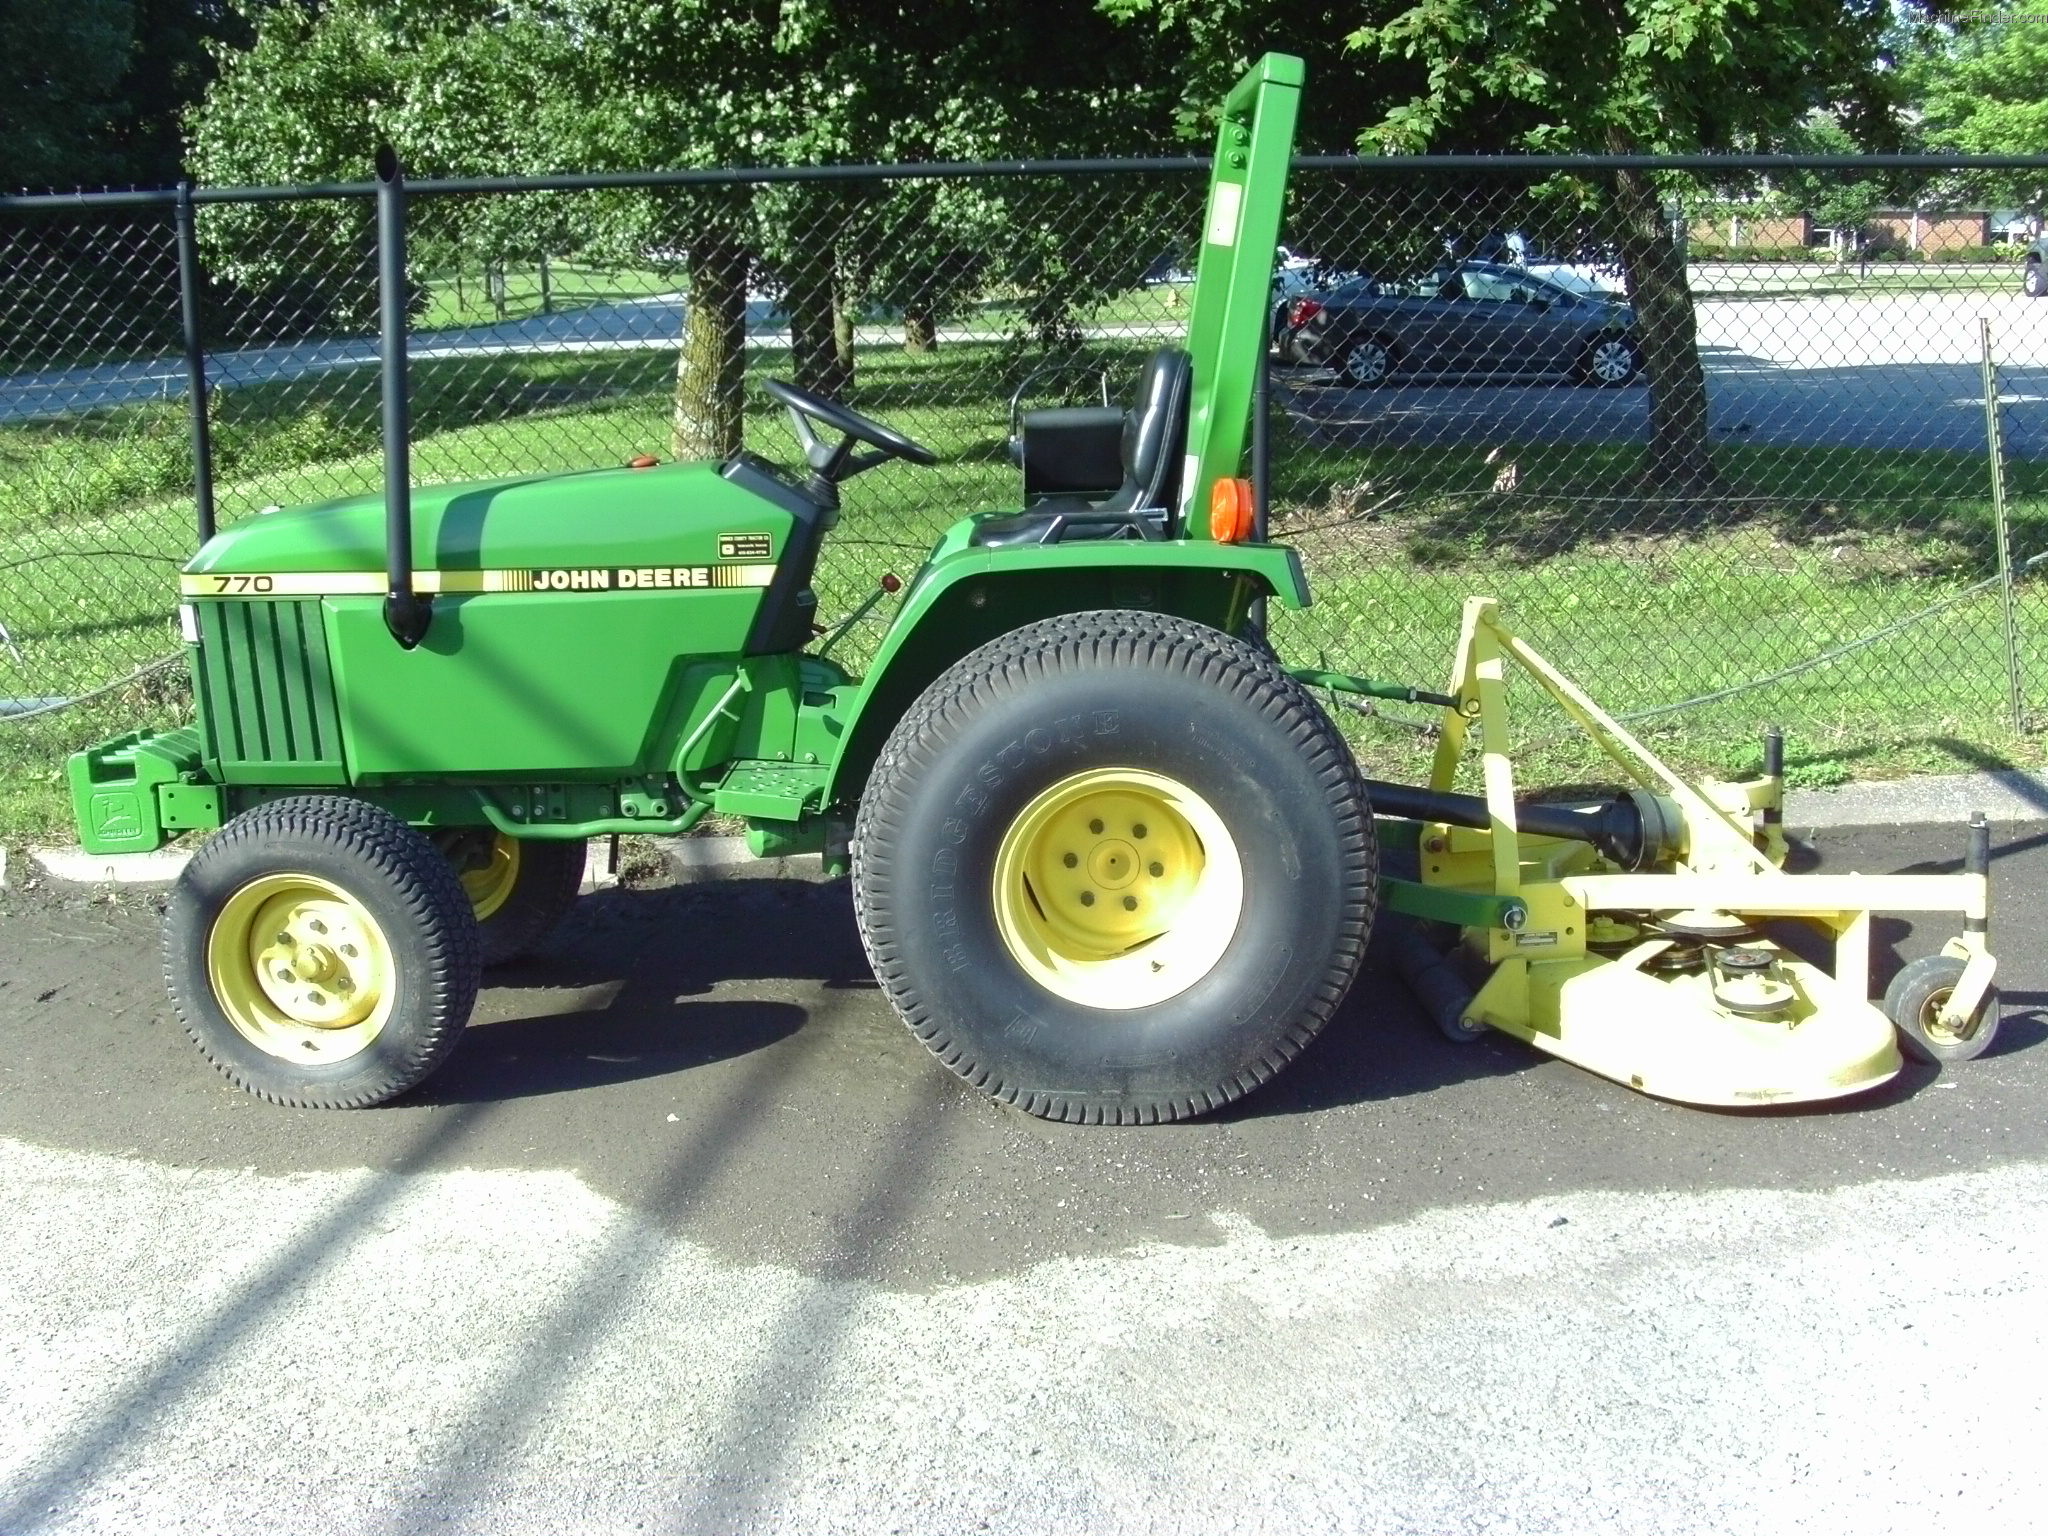 John Deere 770 Tractors - Compact (1-40hp.) - John Deere ...